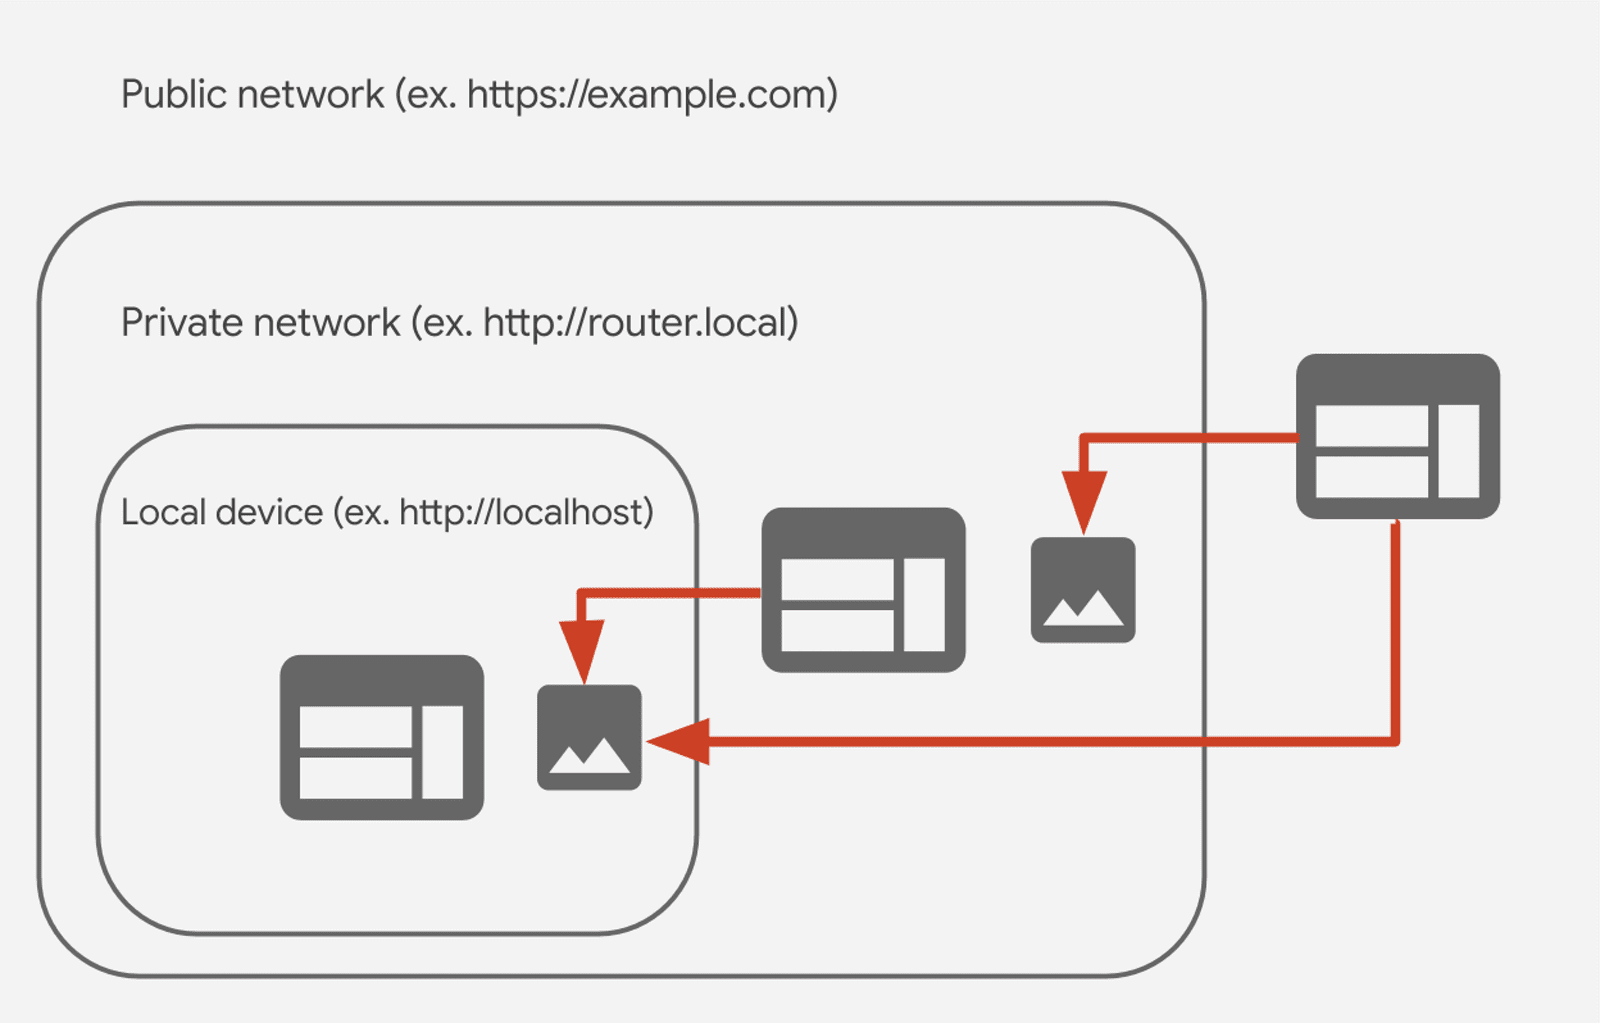 العلاقة بين الشبكات العامة والخاصة والمحلية في الوصول إلى الشبكة الخاصة (CORS-RFC1918). 